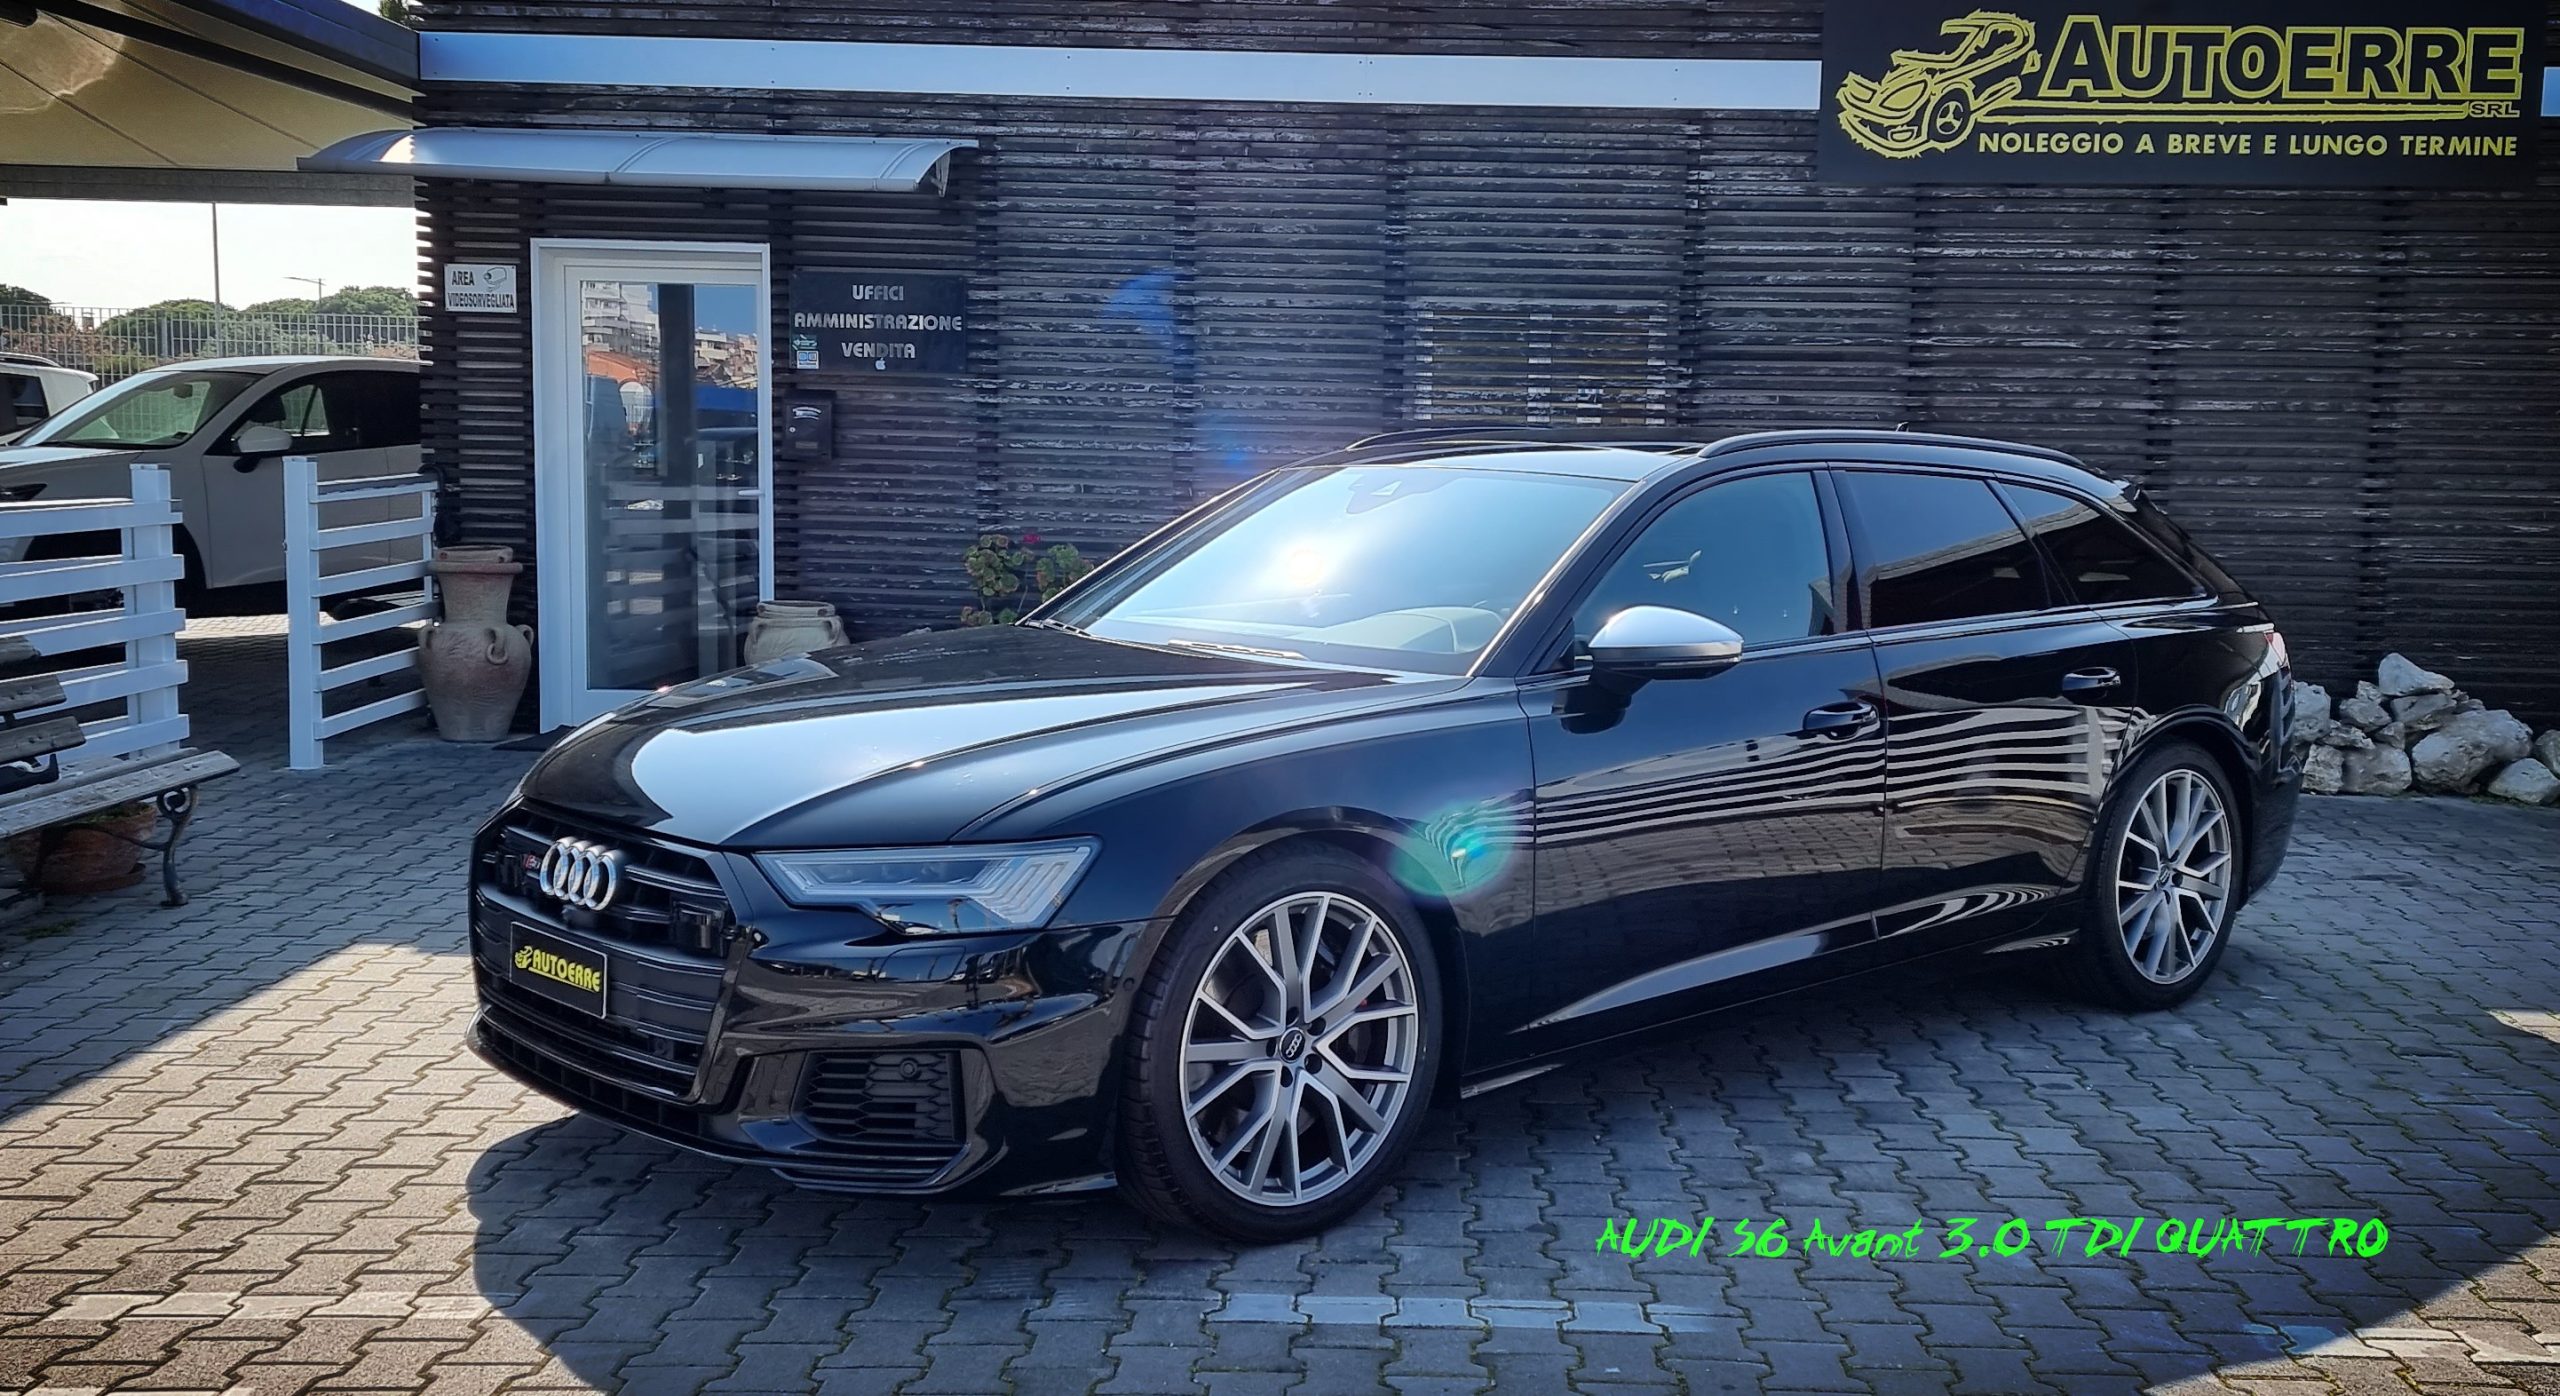 Audi S6 Avant 3.0 TDI Quattro